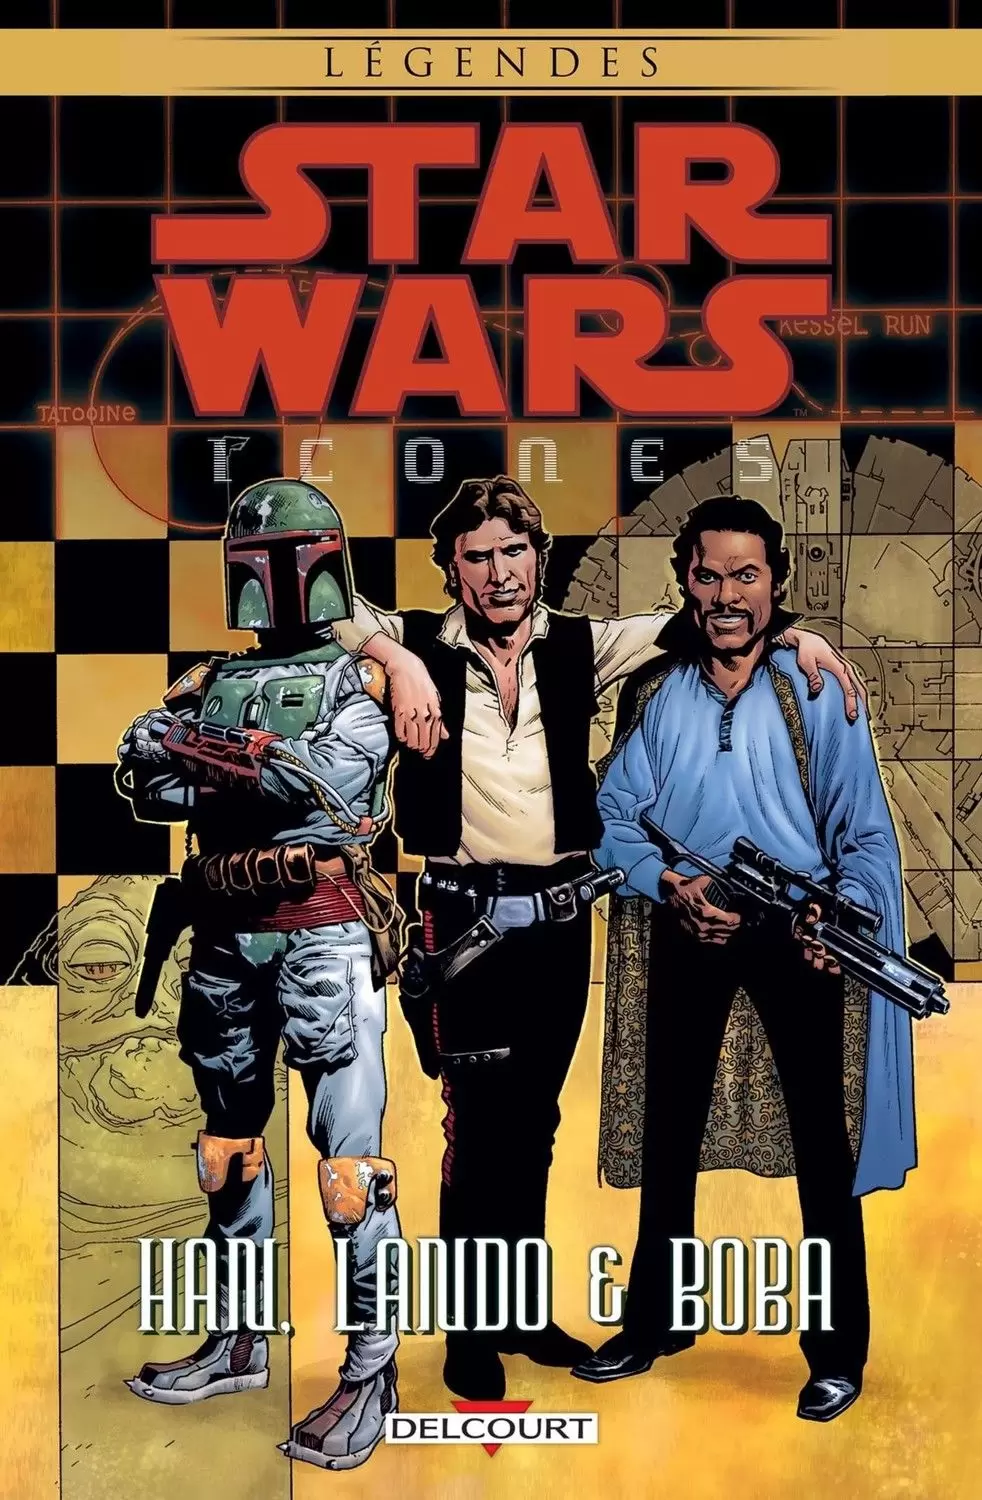 Star Wars - Icones - Han, Lando & Boba